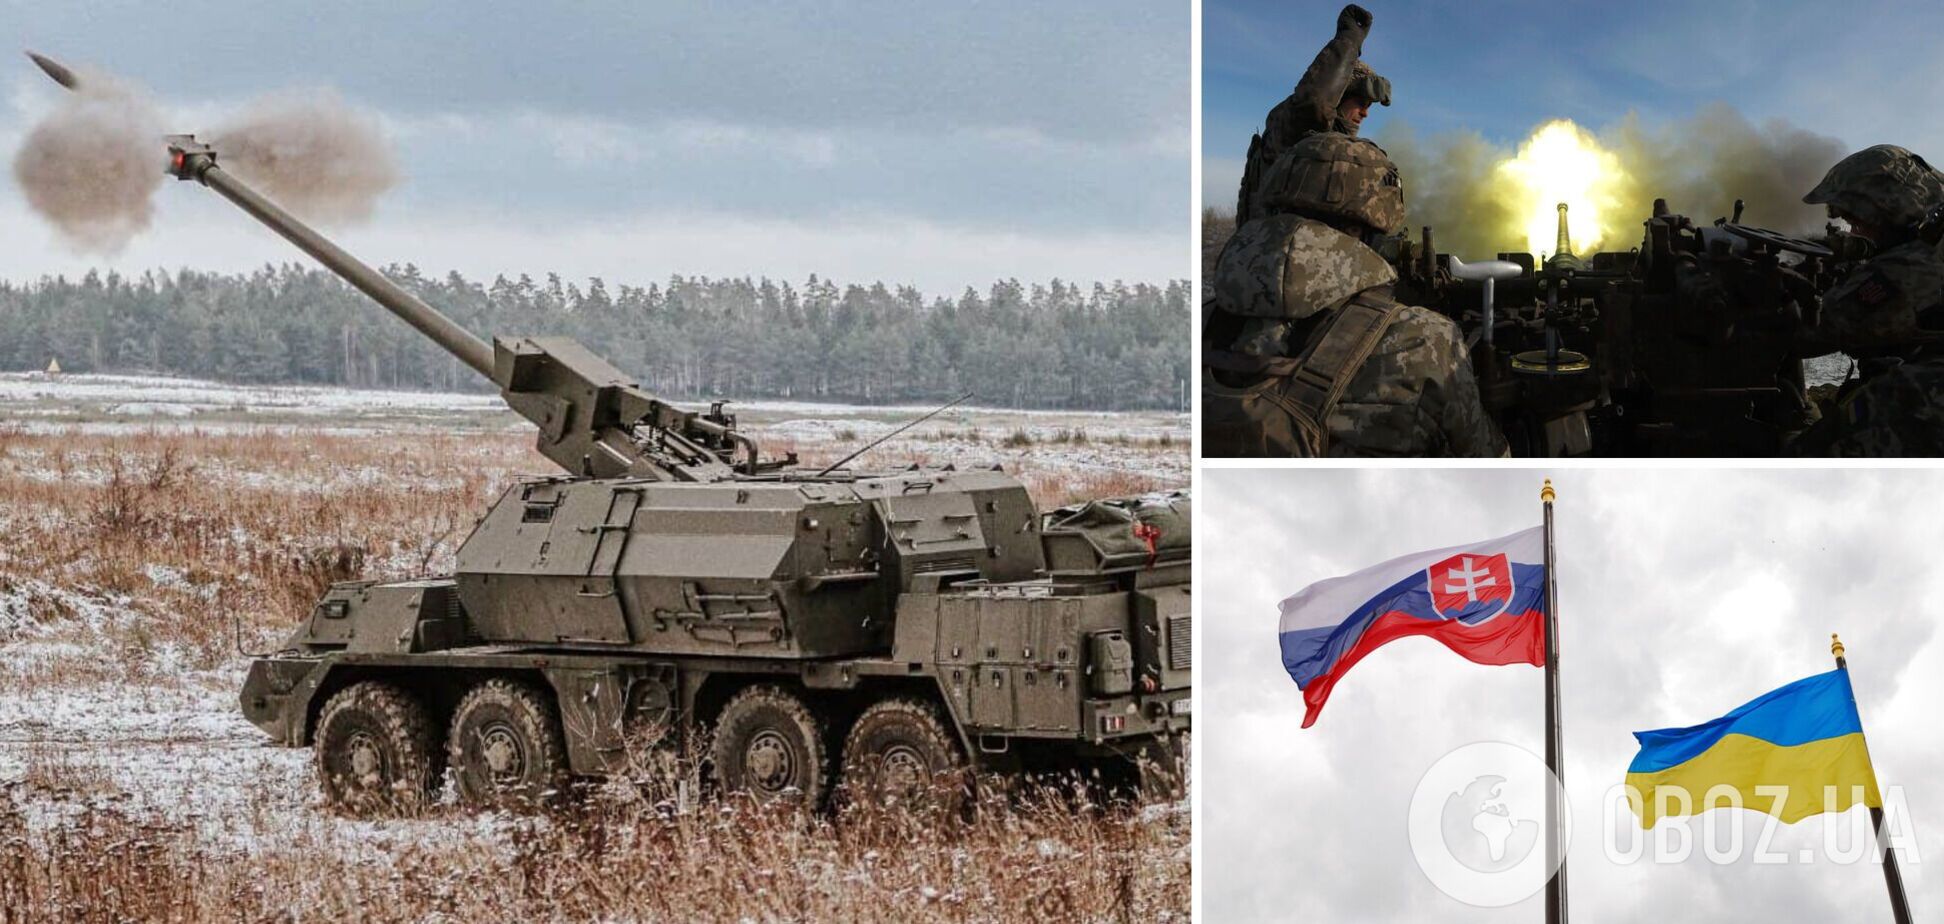 Словакия передала Украине восьмую САУ Zuzana 2: чем особенна и почему так важна для победы в артиллерийских дуэлях